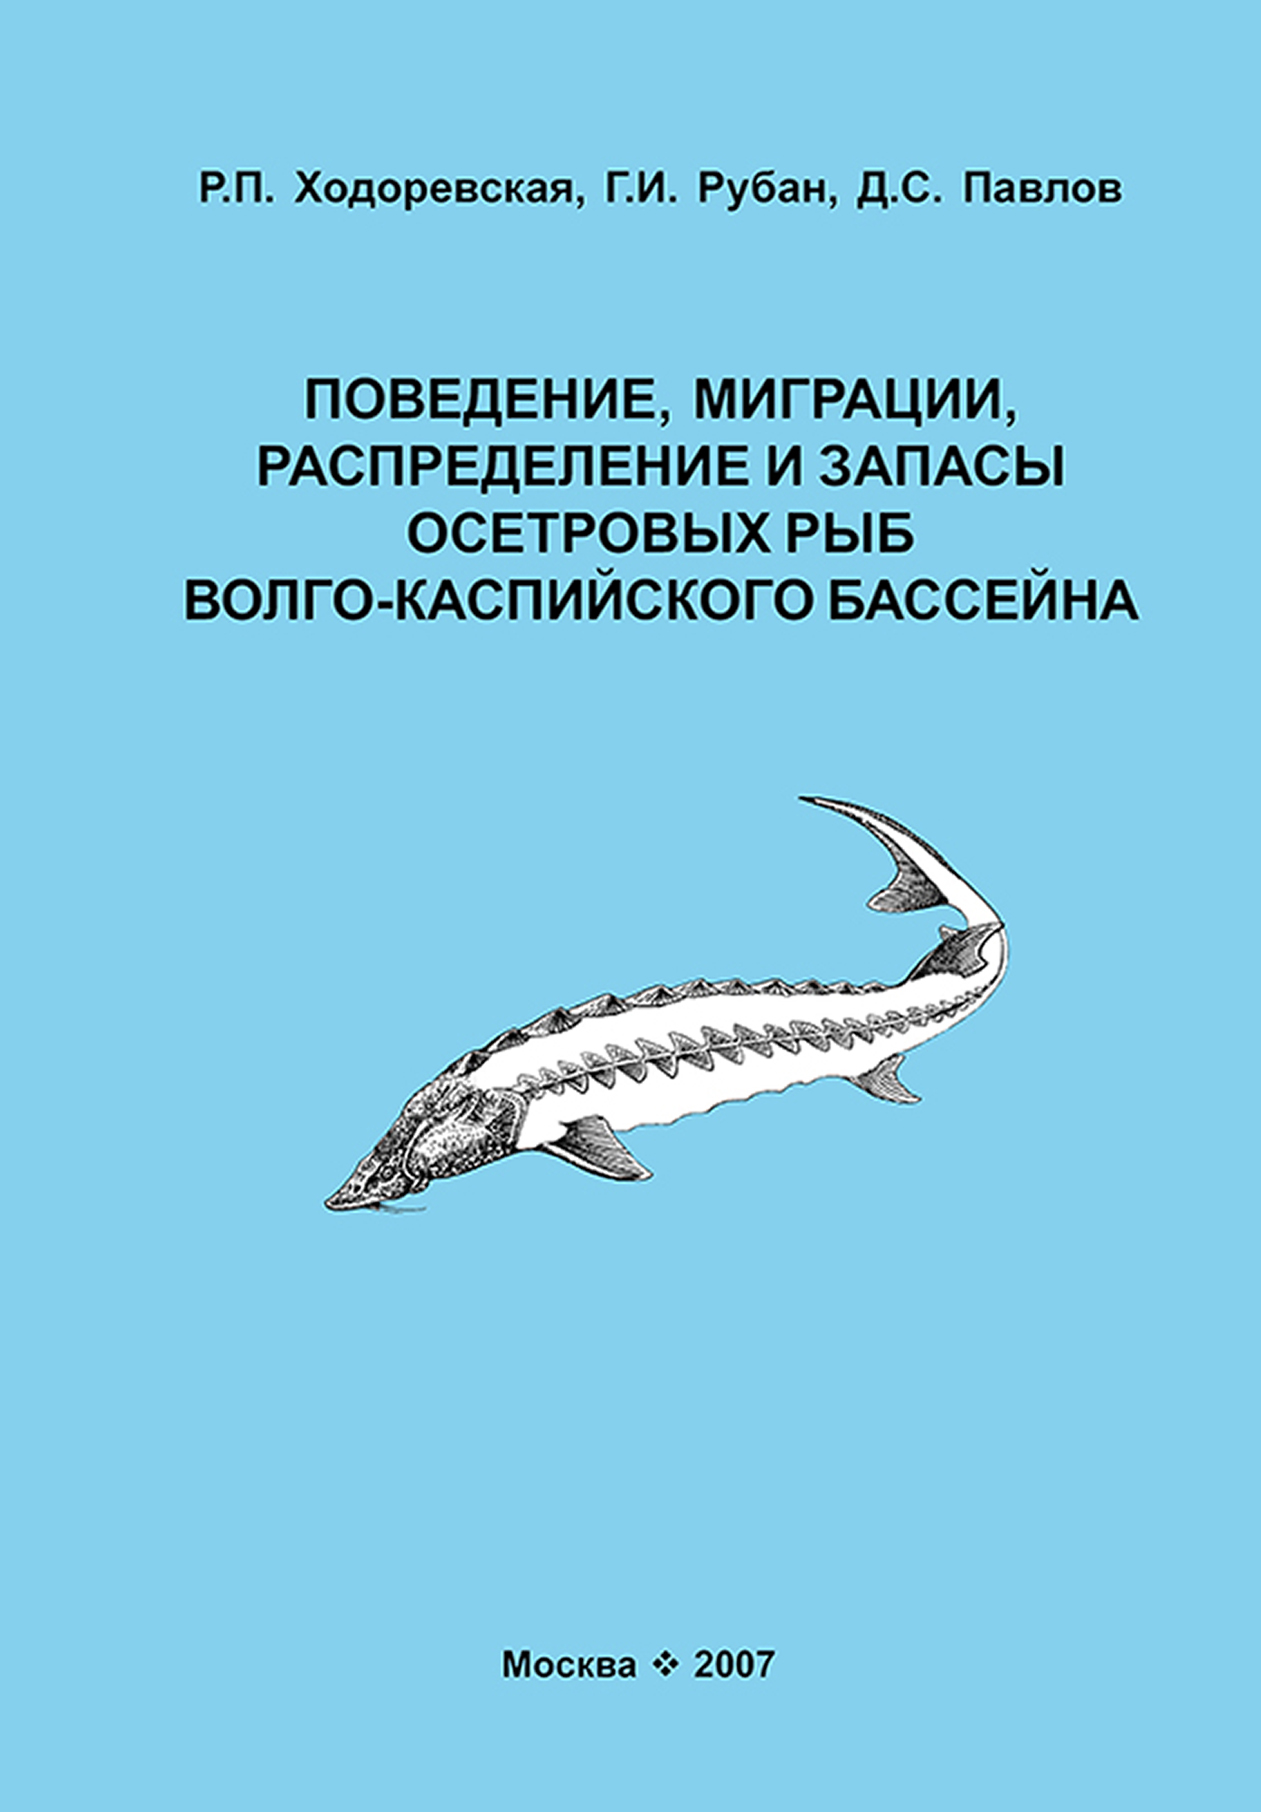 Поведение, миграции, распределение и запасы осетровых рыб Волго-Каспийского бассейна